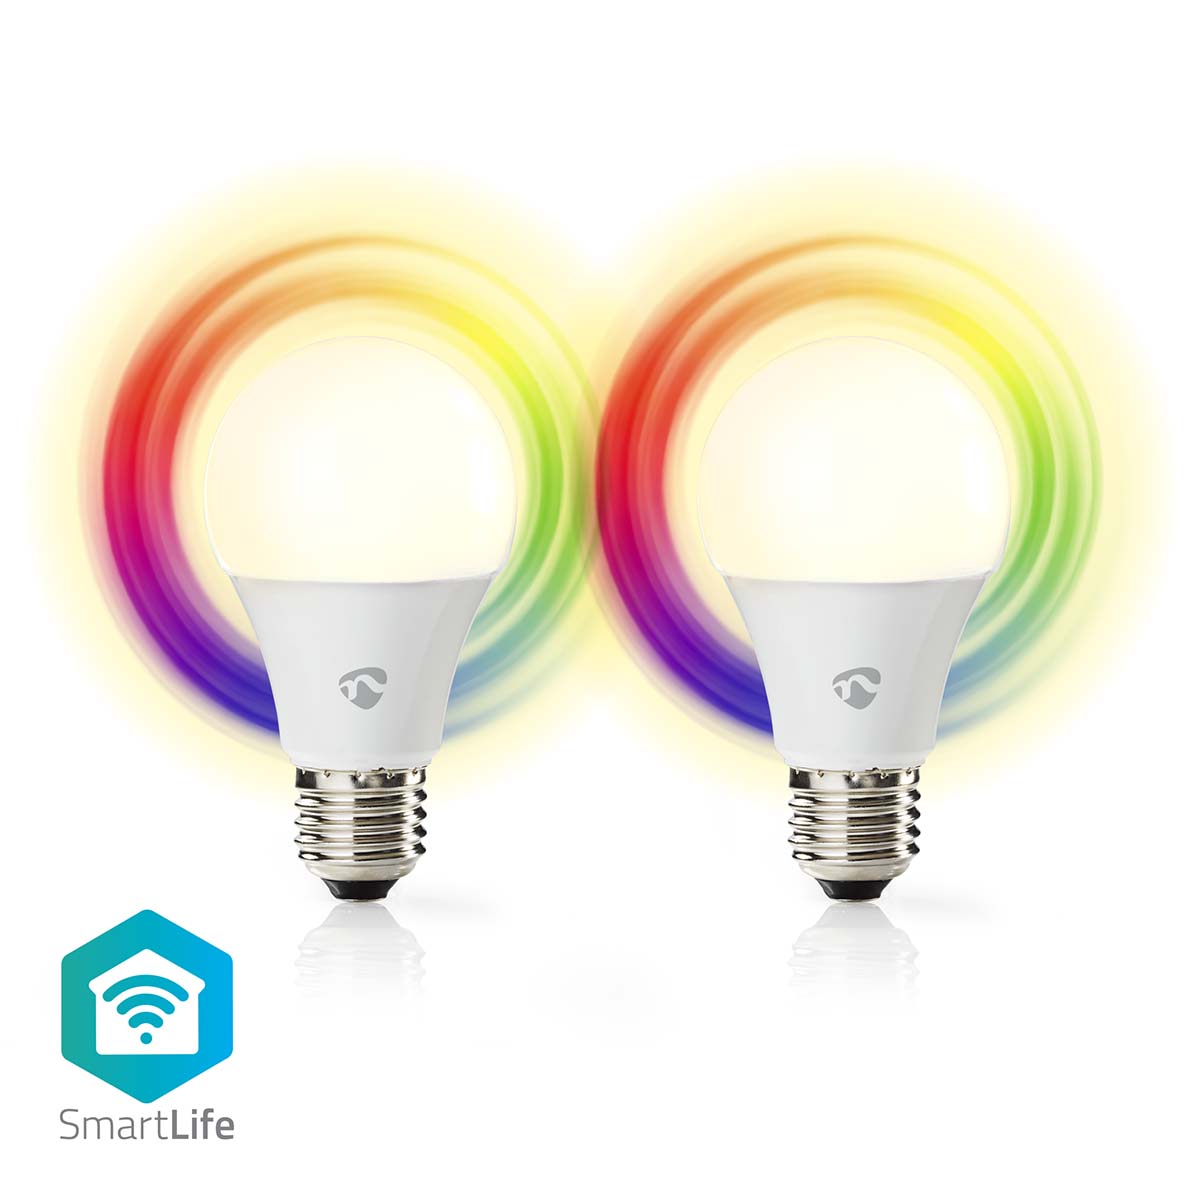 Nedis SmartLife chytrá LED žárovka E27 9W 806lm barevná + teplá/studená bílá, sada 2ks (WIFILRC20E27)